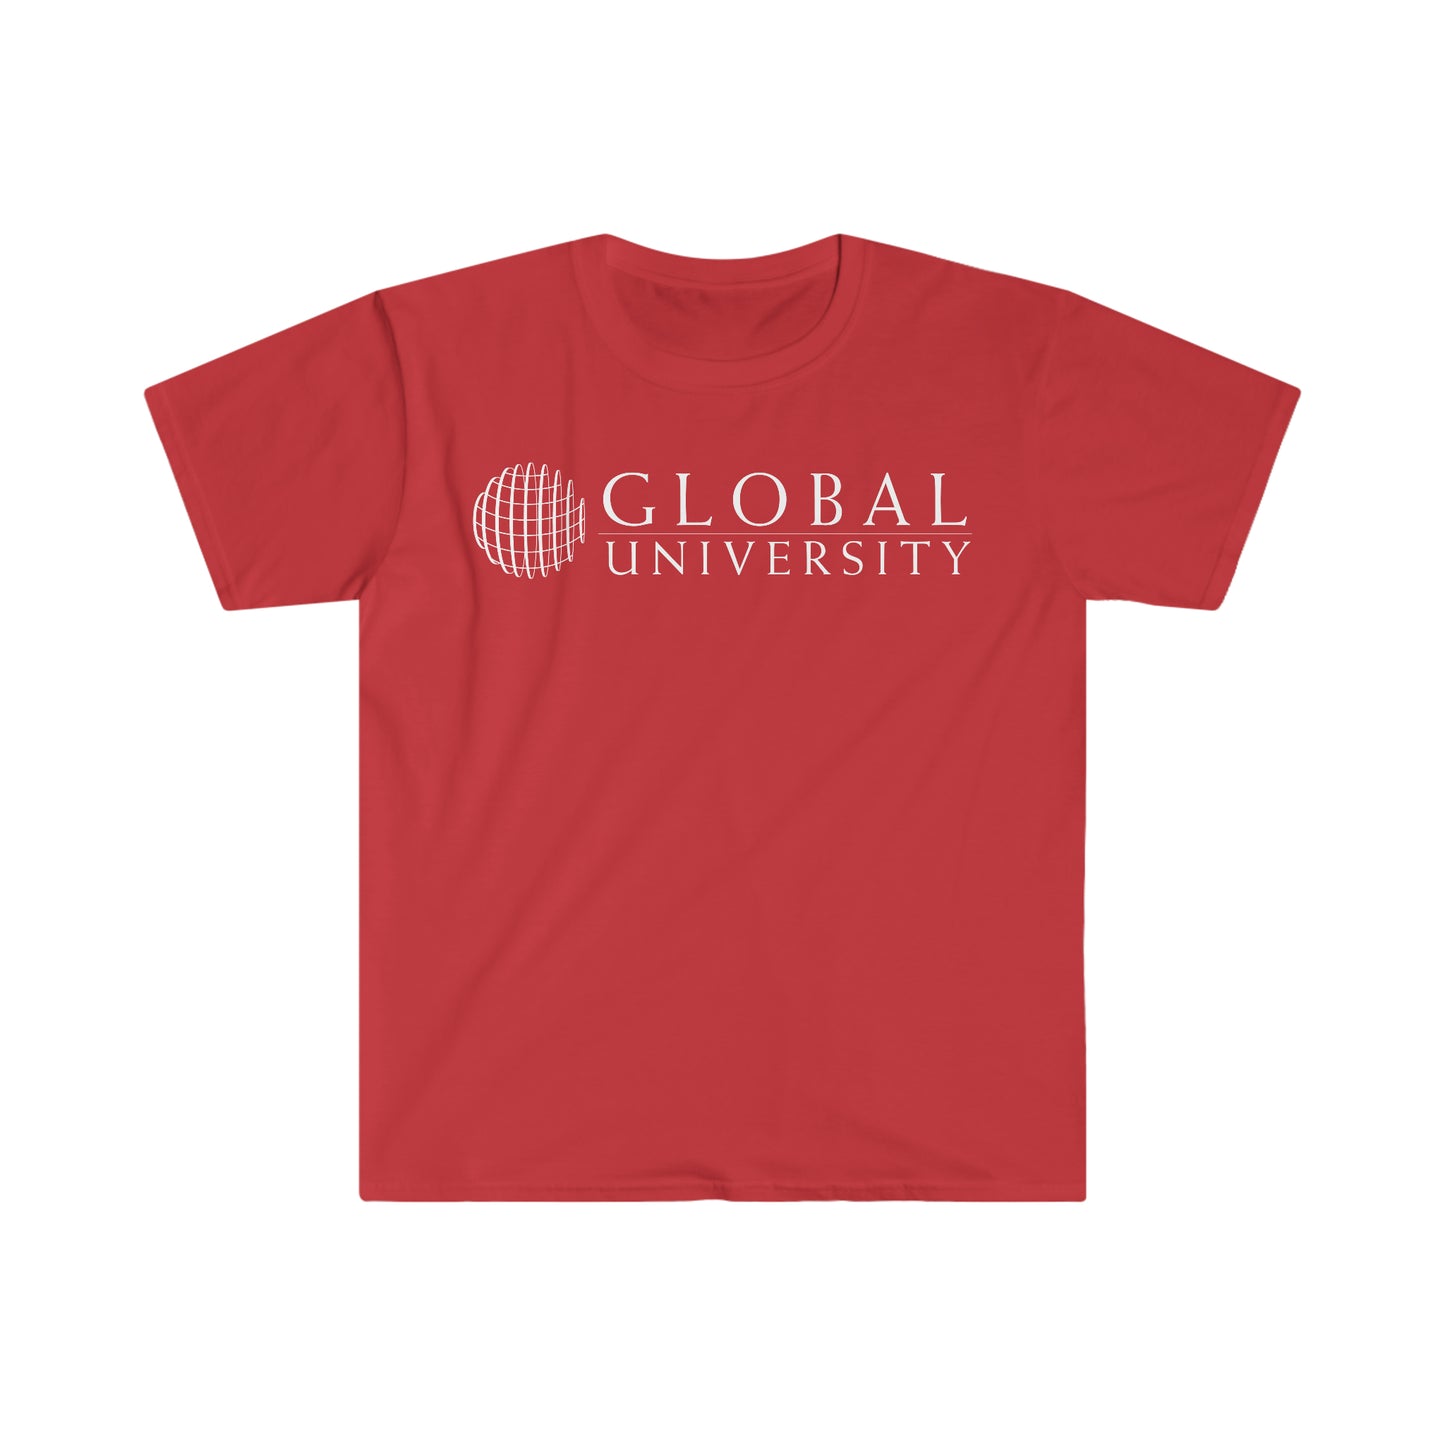 Global University Softstyle T-Shirt